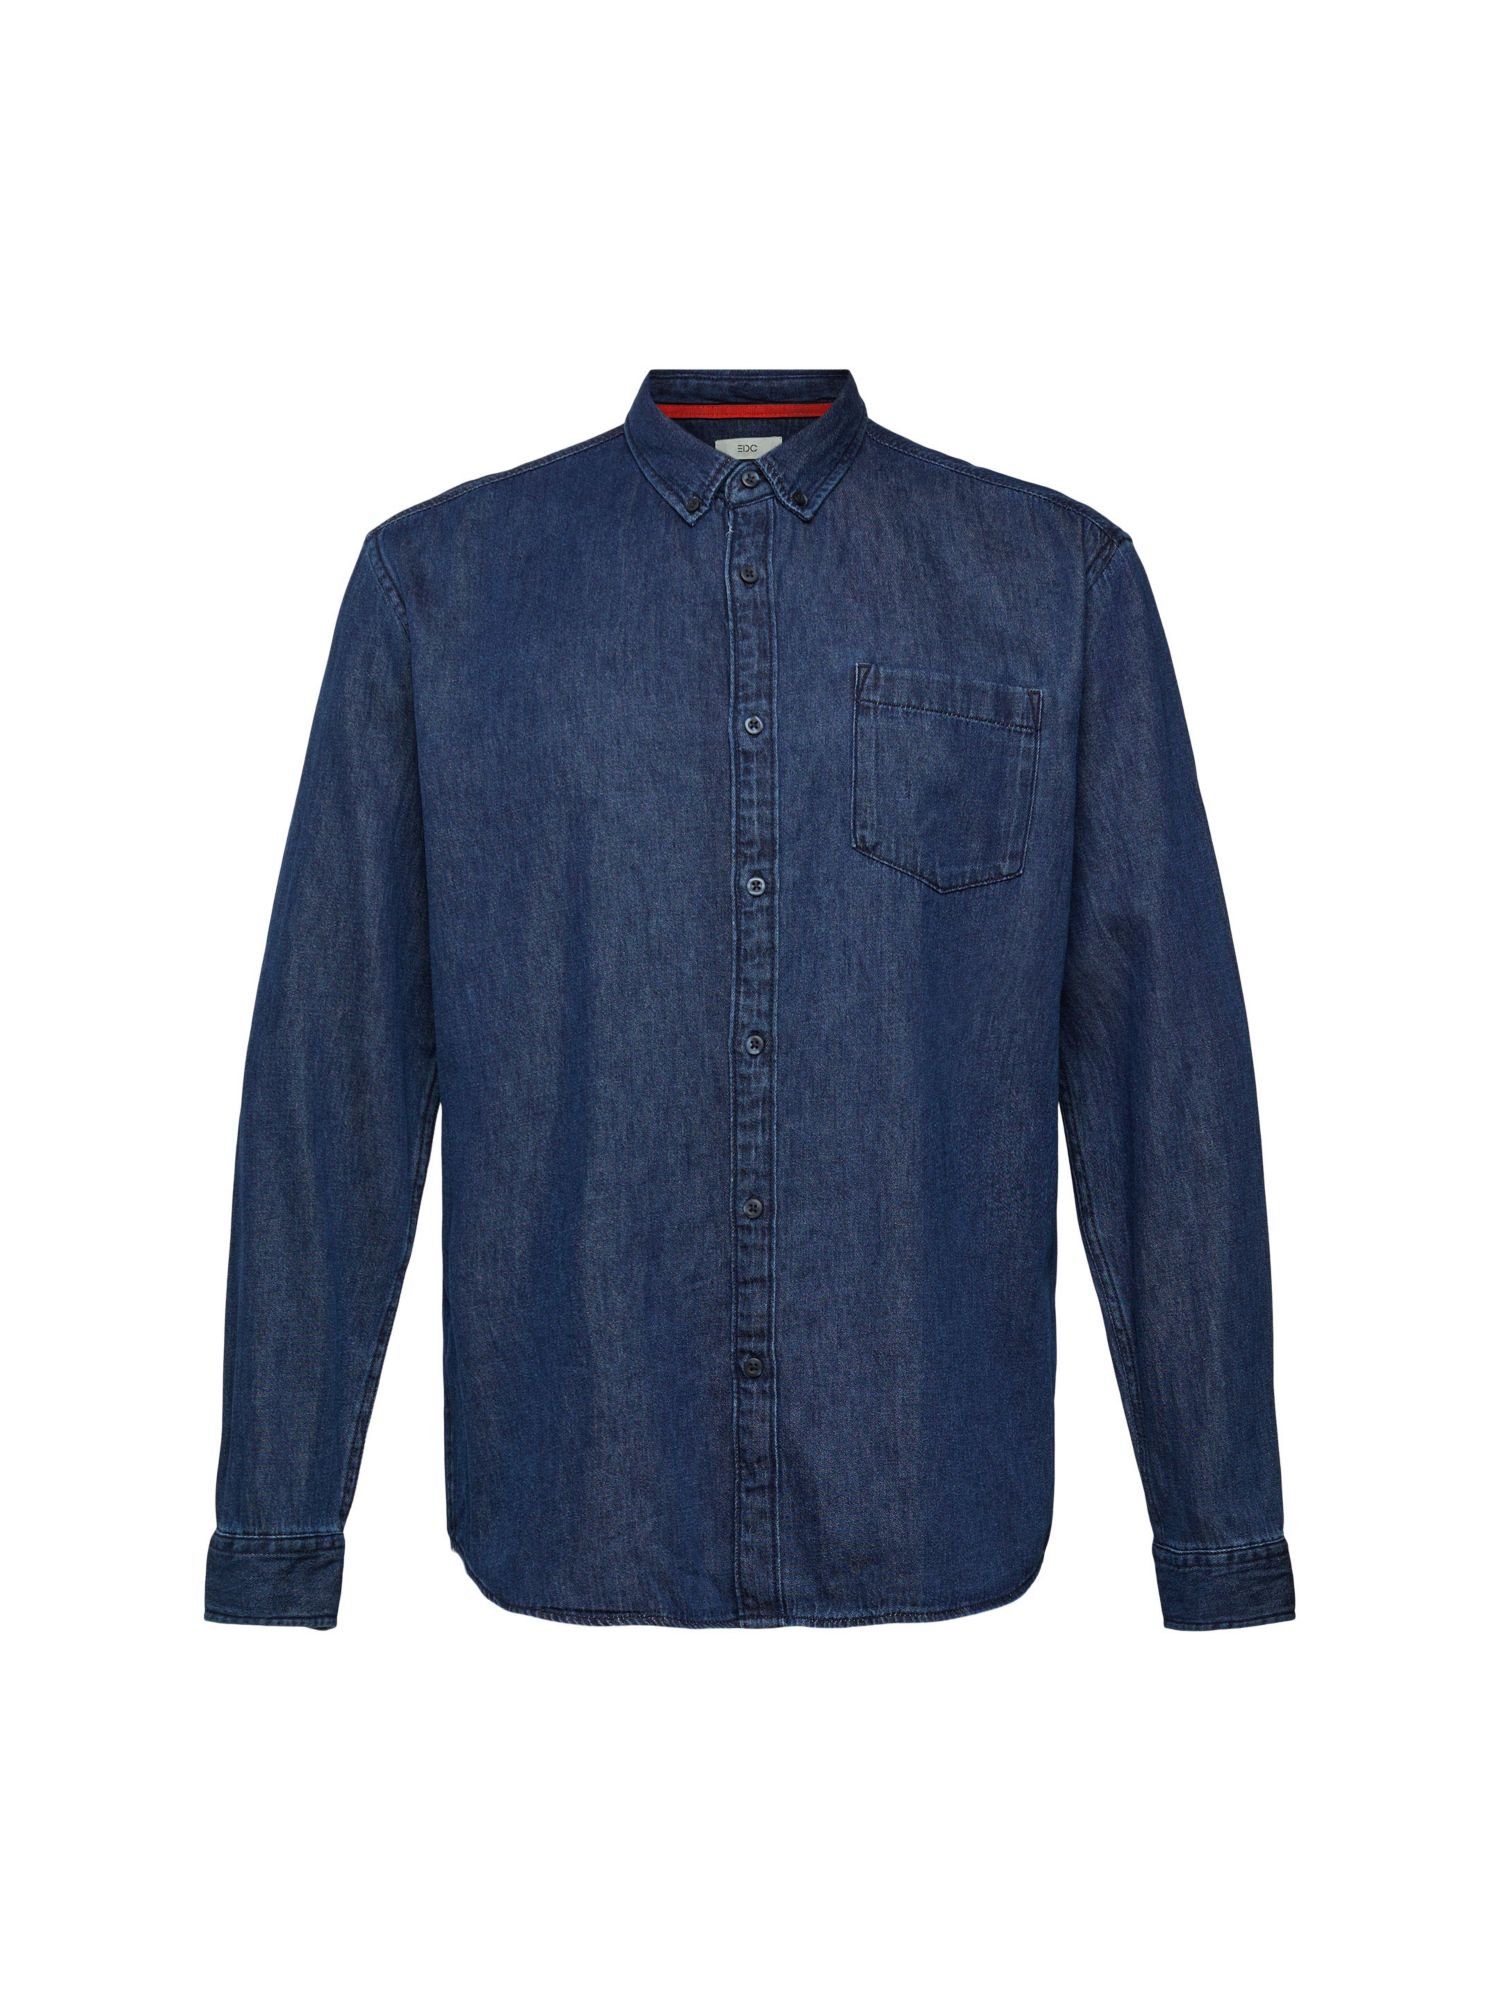 minderwertig edc by Esprit Langarmhemd aufgesetzter mit Tasche WASHED BLUE Jeanshemd DARK